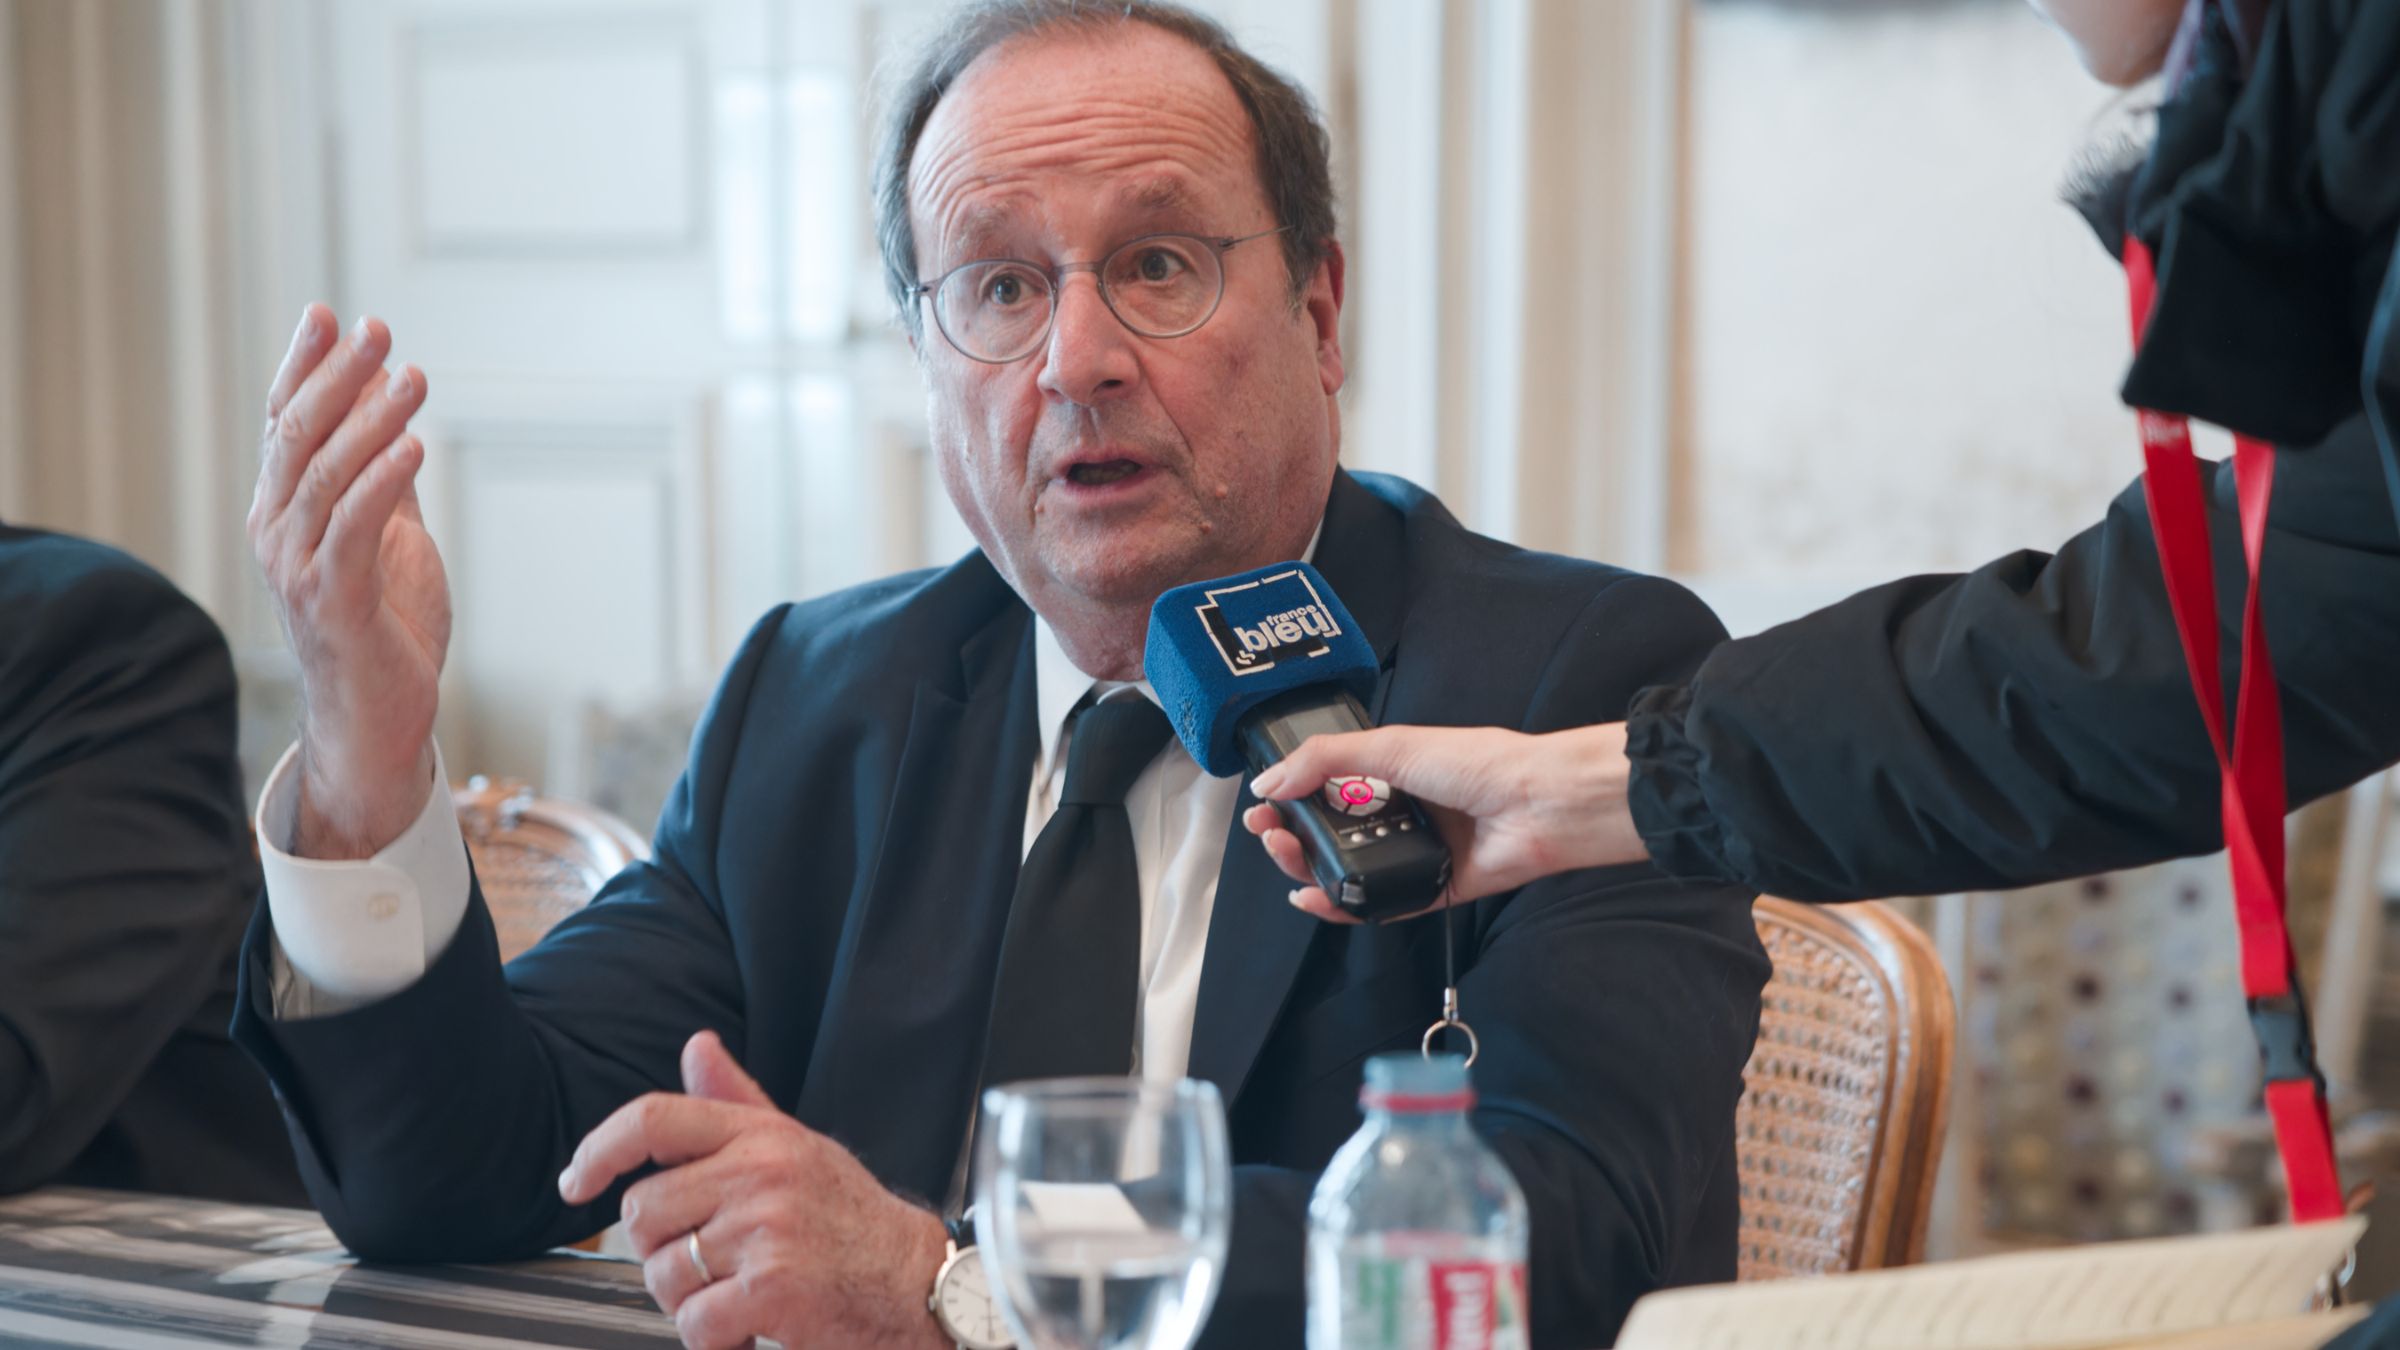 François Hollande à Dijon : son point de vue sur la situation mondiale